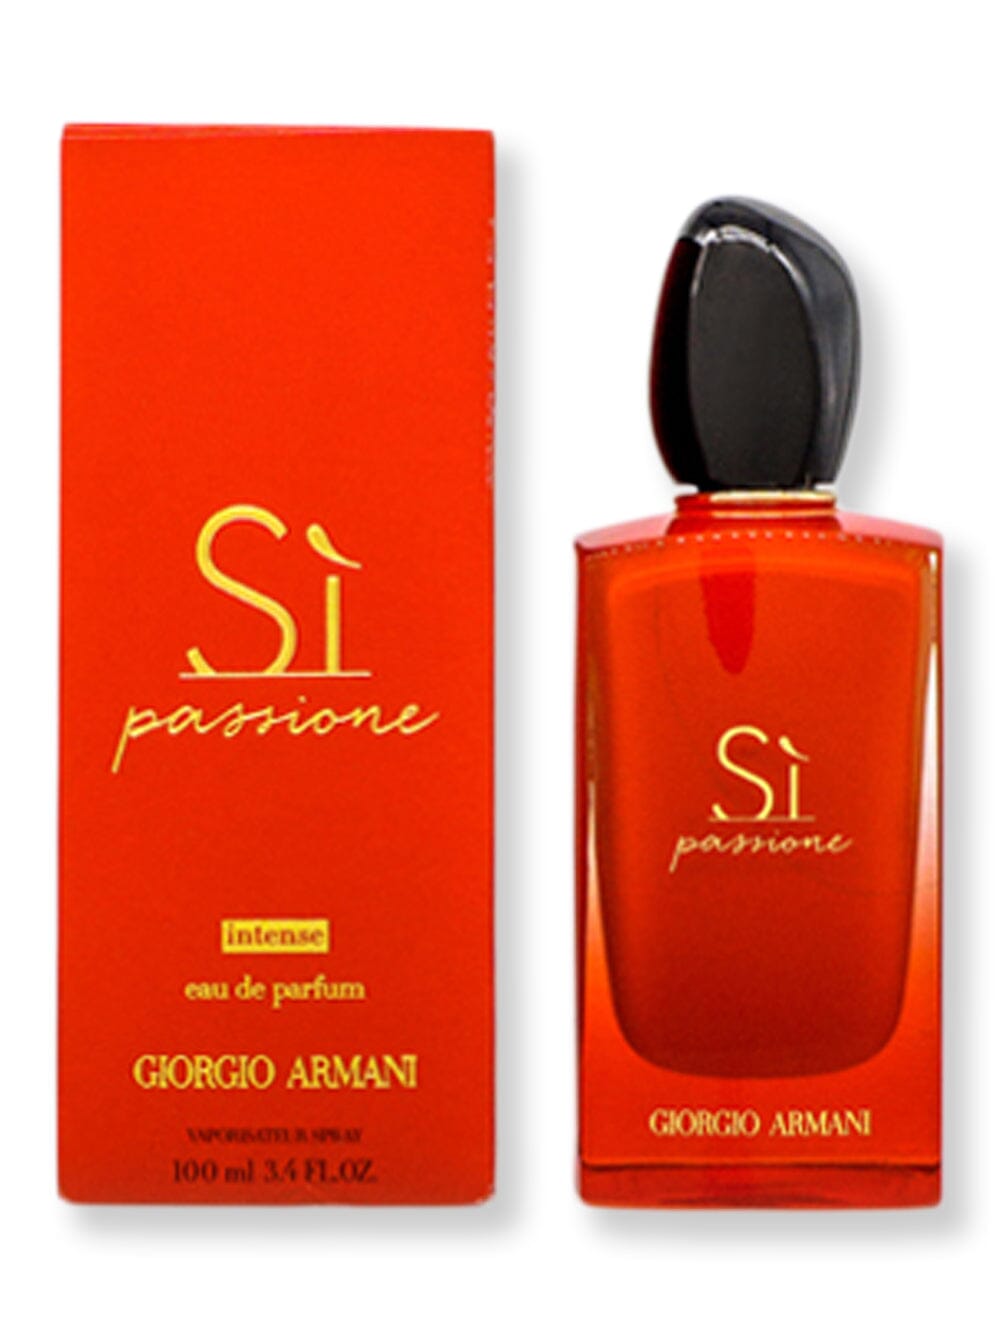 GIORGIO ARMANI GIORGIO ARMANI Si Passione Intense EDP Spray 3.4 oz100 ml Perfume 